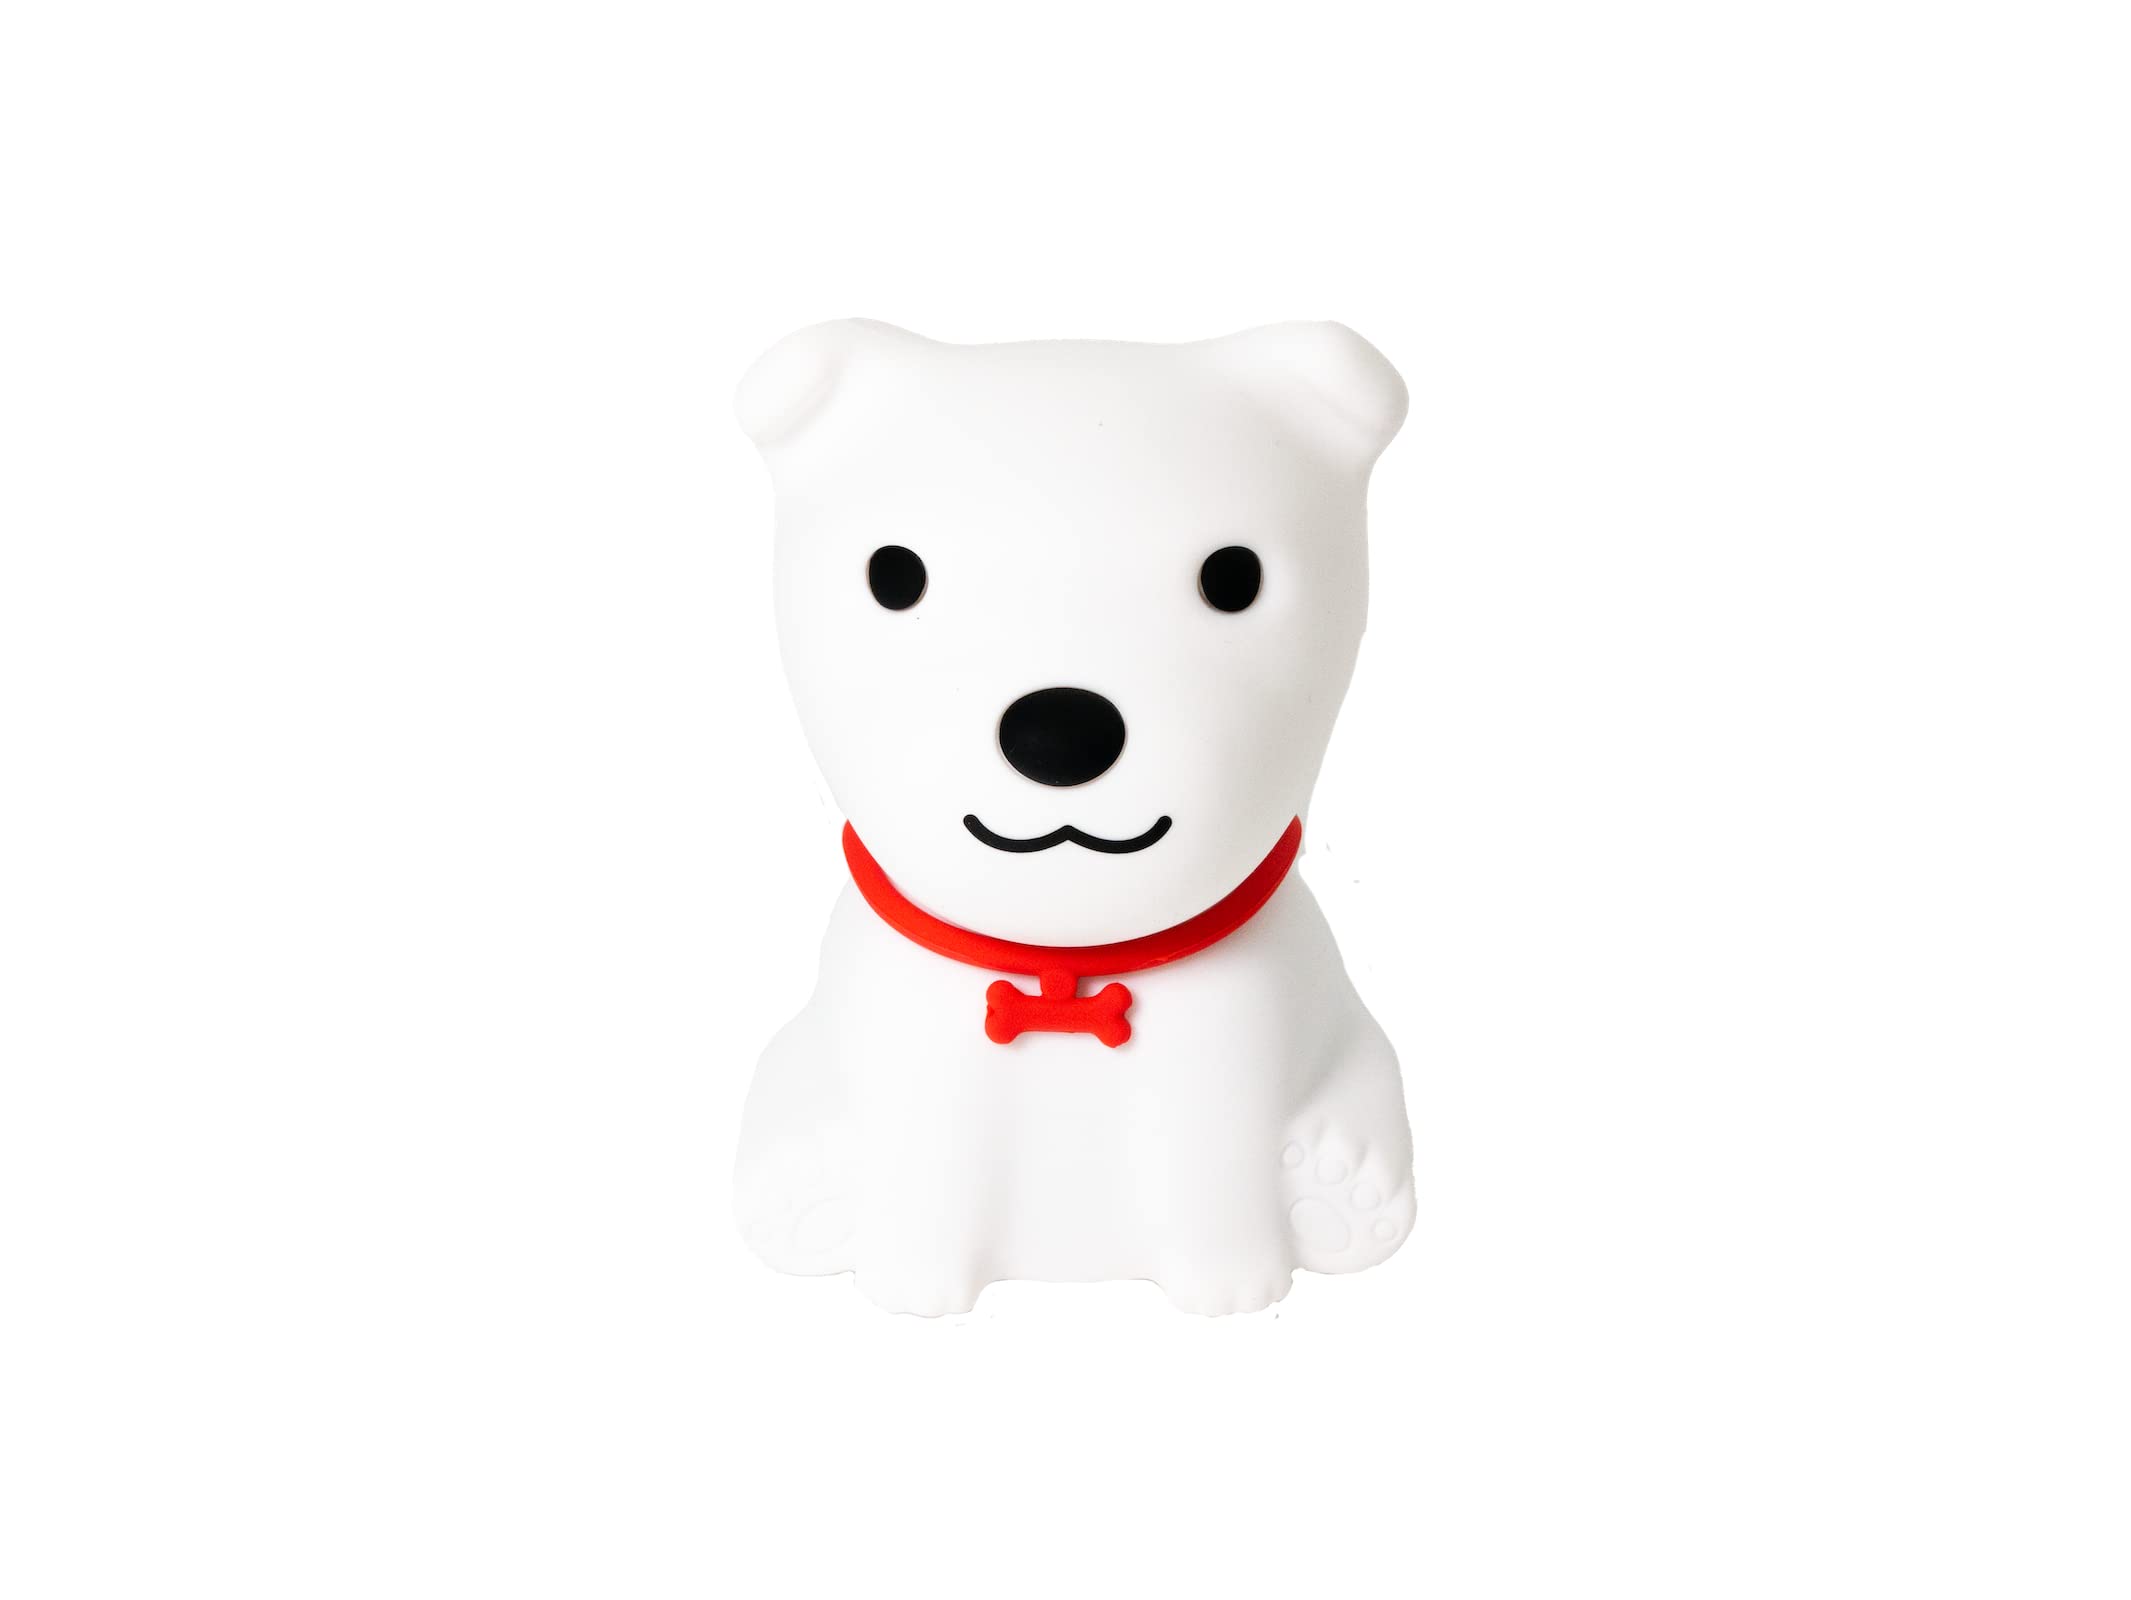 InnioGIO GIOdog, Nachtlicht als Hund aus Silikon für Kinder, Aufladbar per Micro-USB, Deko für Baby- & Kleinkinderzimmer, Einschlafhilfe für Kids, LED Lampe in Tierform White